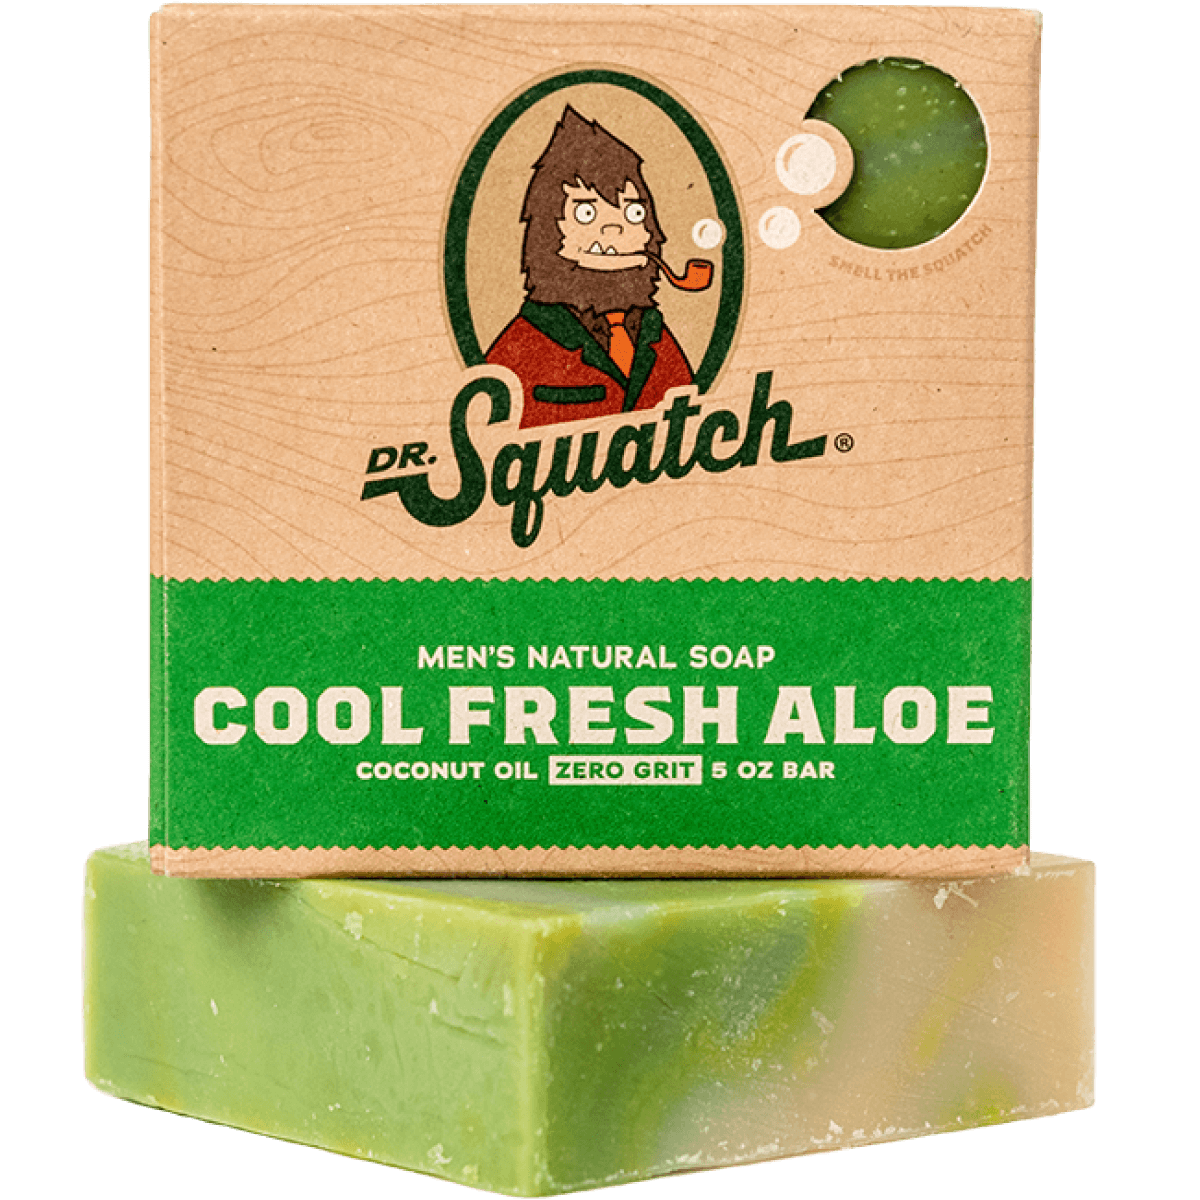 Dr. Squatch Natural Exfoliating Soap Bar, Cedar Citrus -5oz for